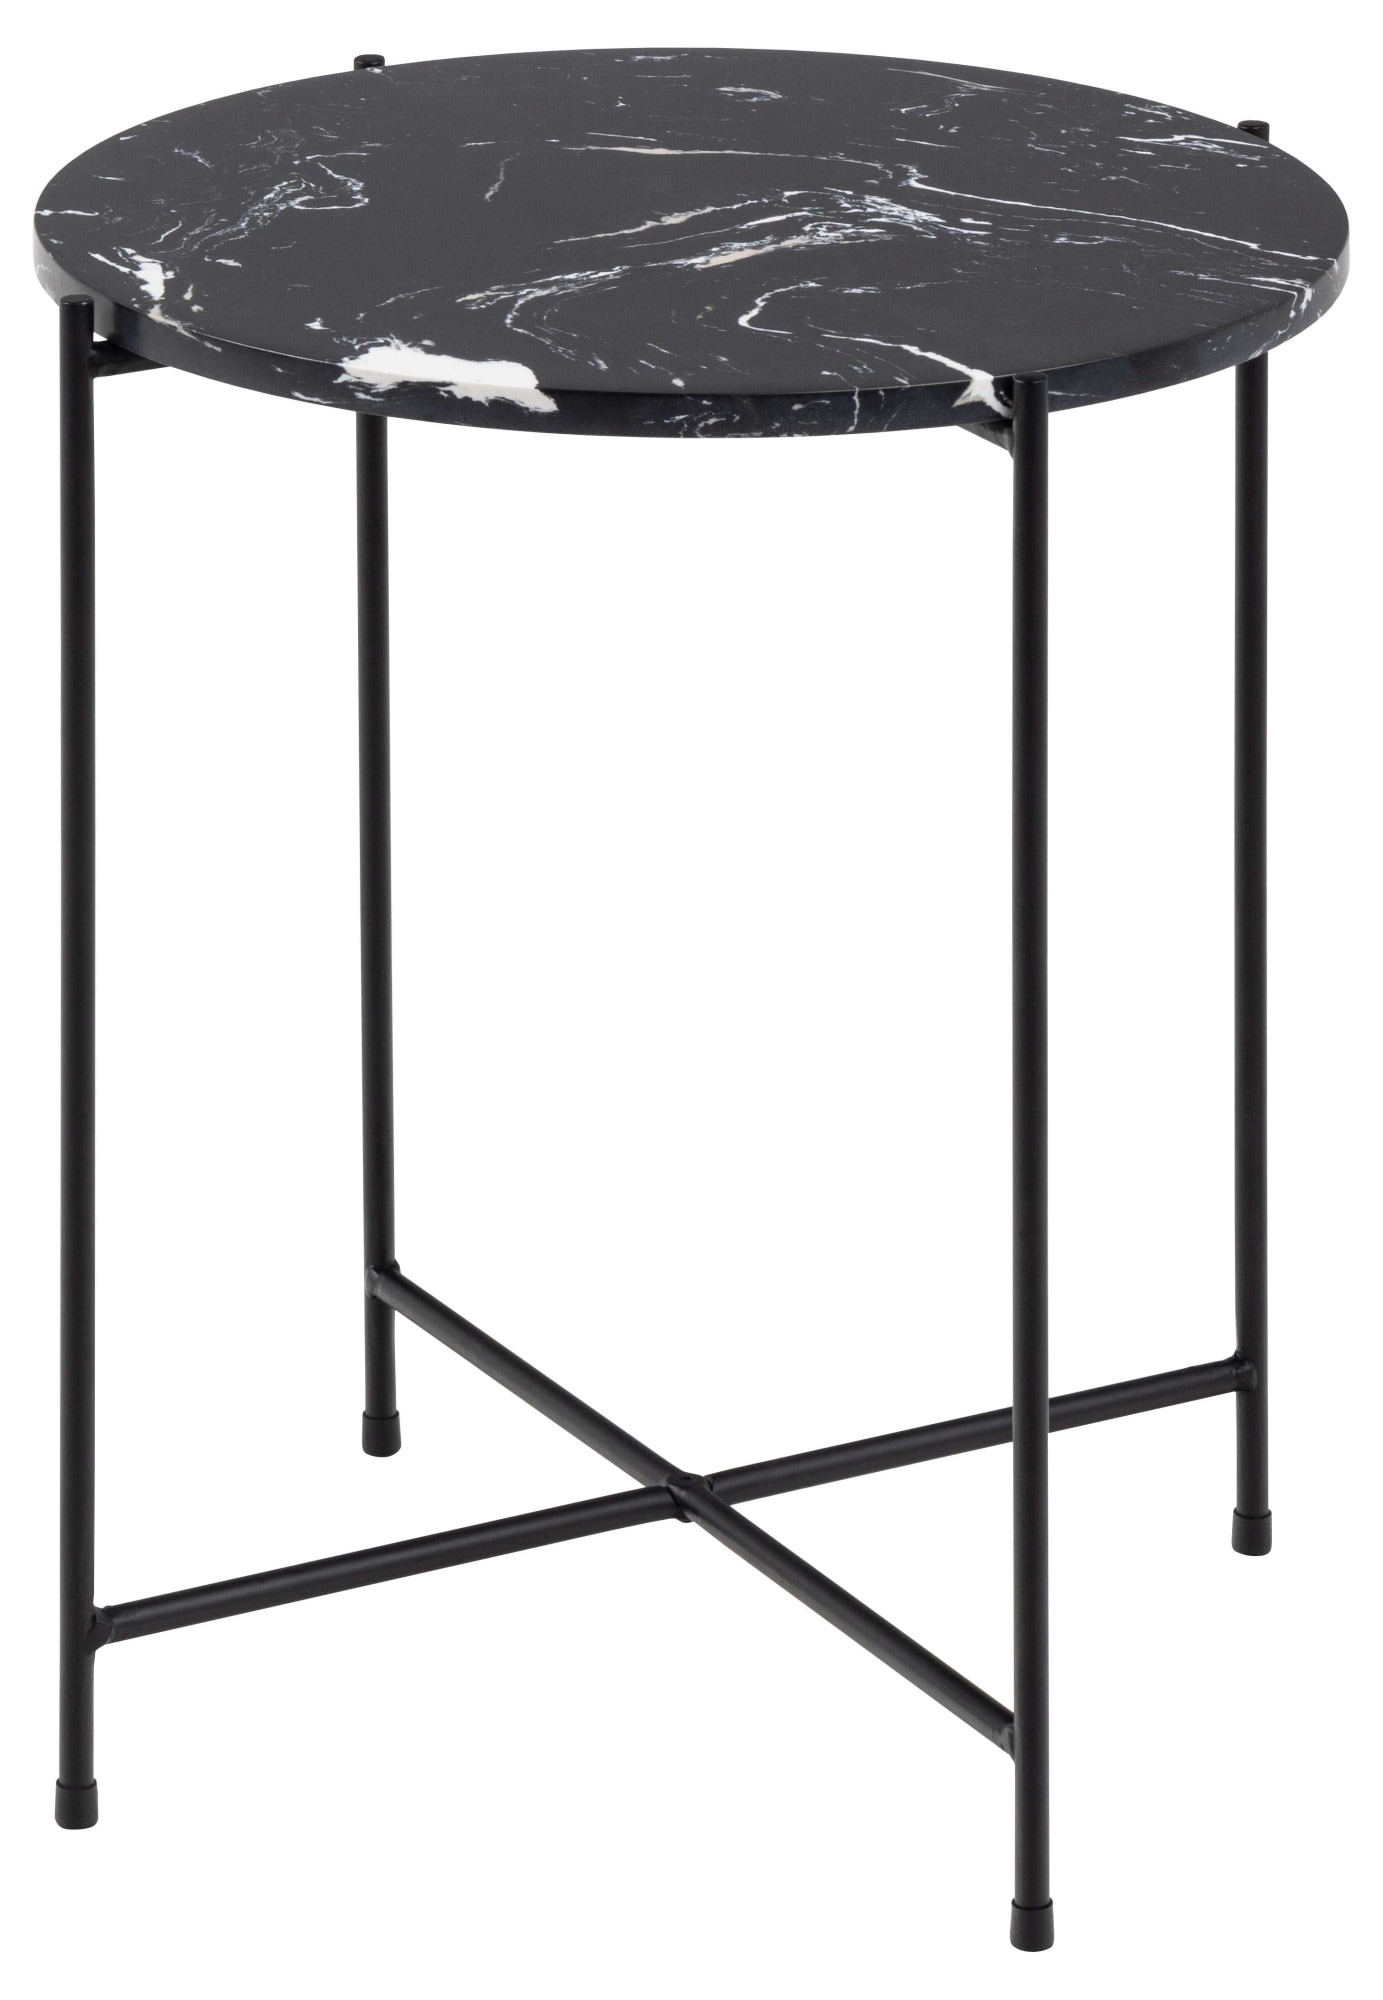 Beistelltisch »Avila«, Ecktisch, rund, Tischplatte aus Marmorstein, T: 52 cm